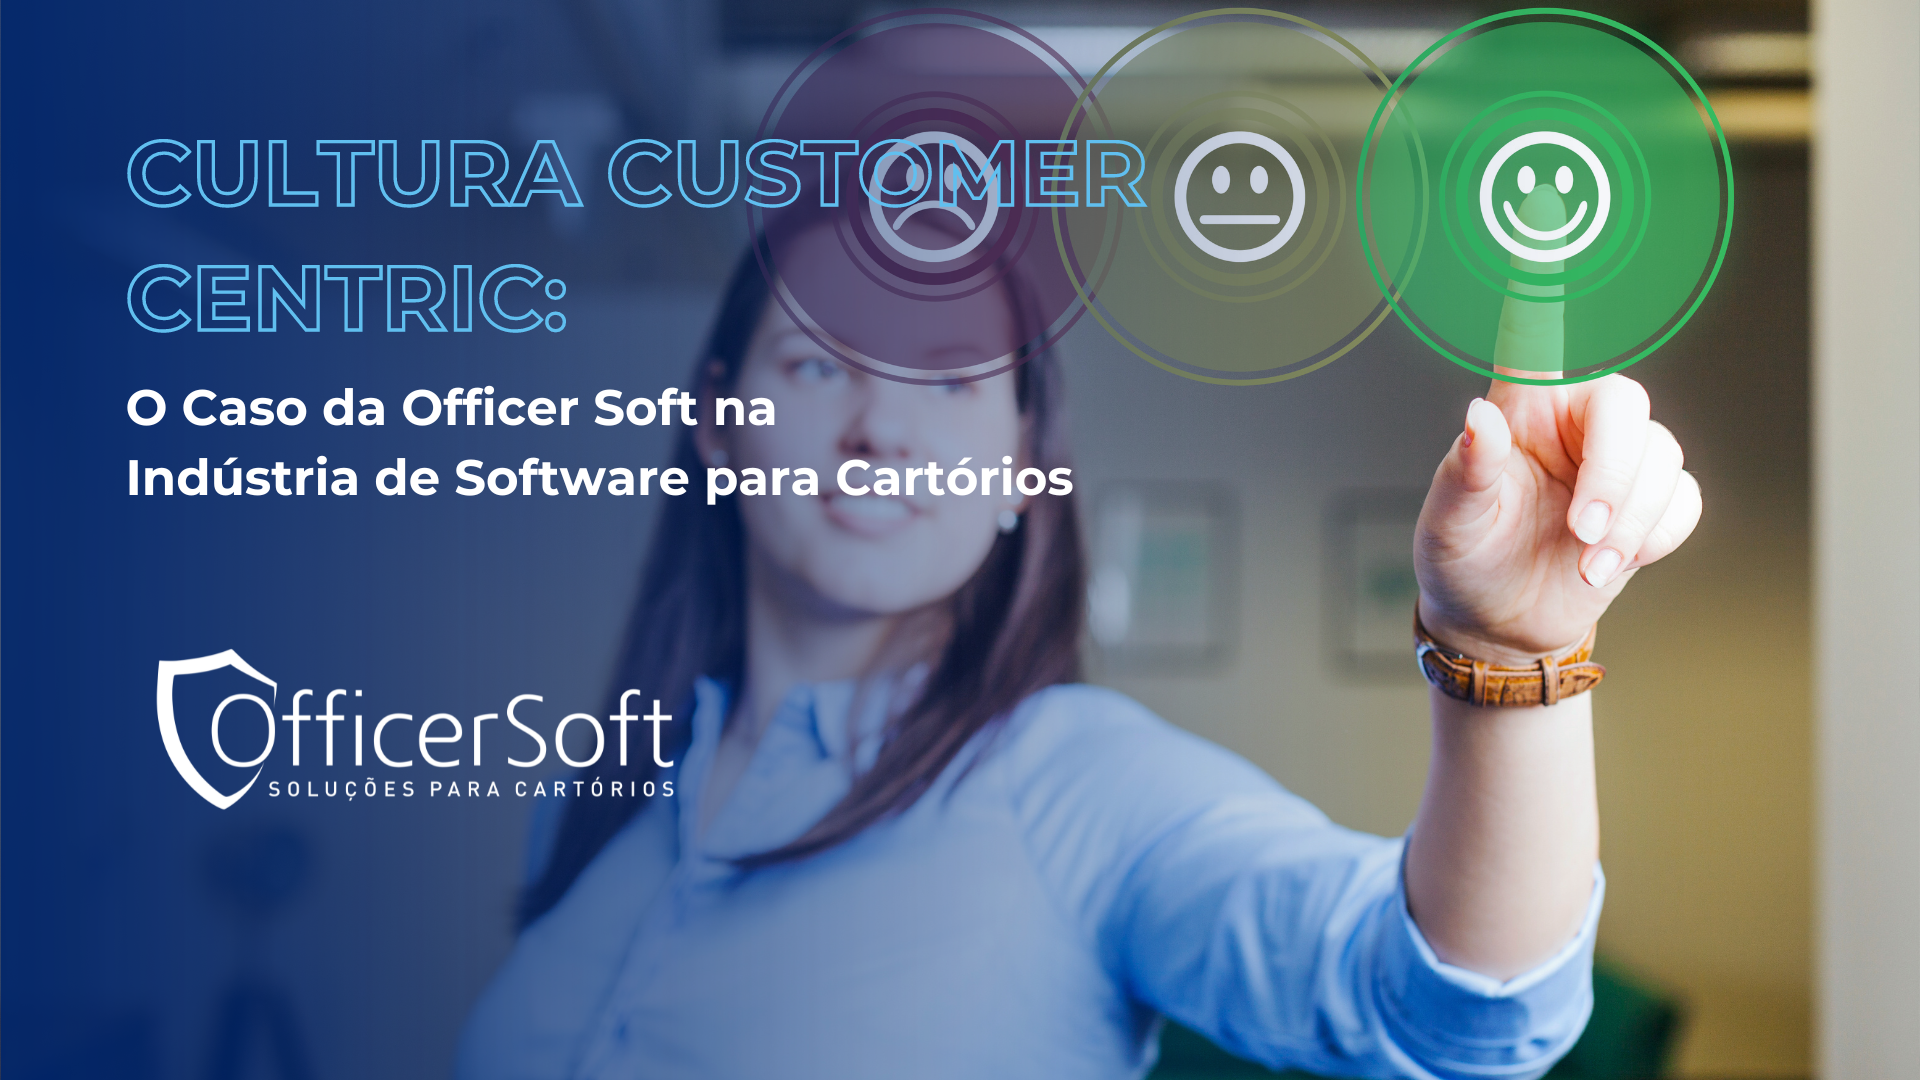 Cultura Customer Centric: O Caso da Officer Soft na Indústria de Software para Cartórios